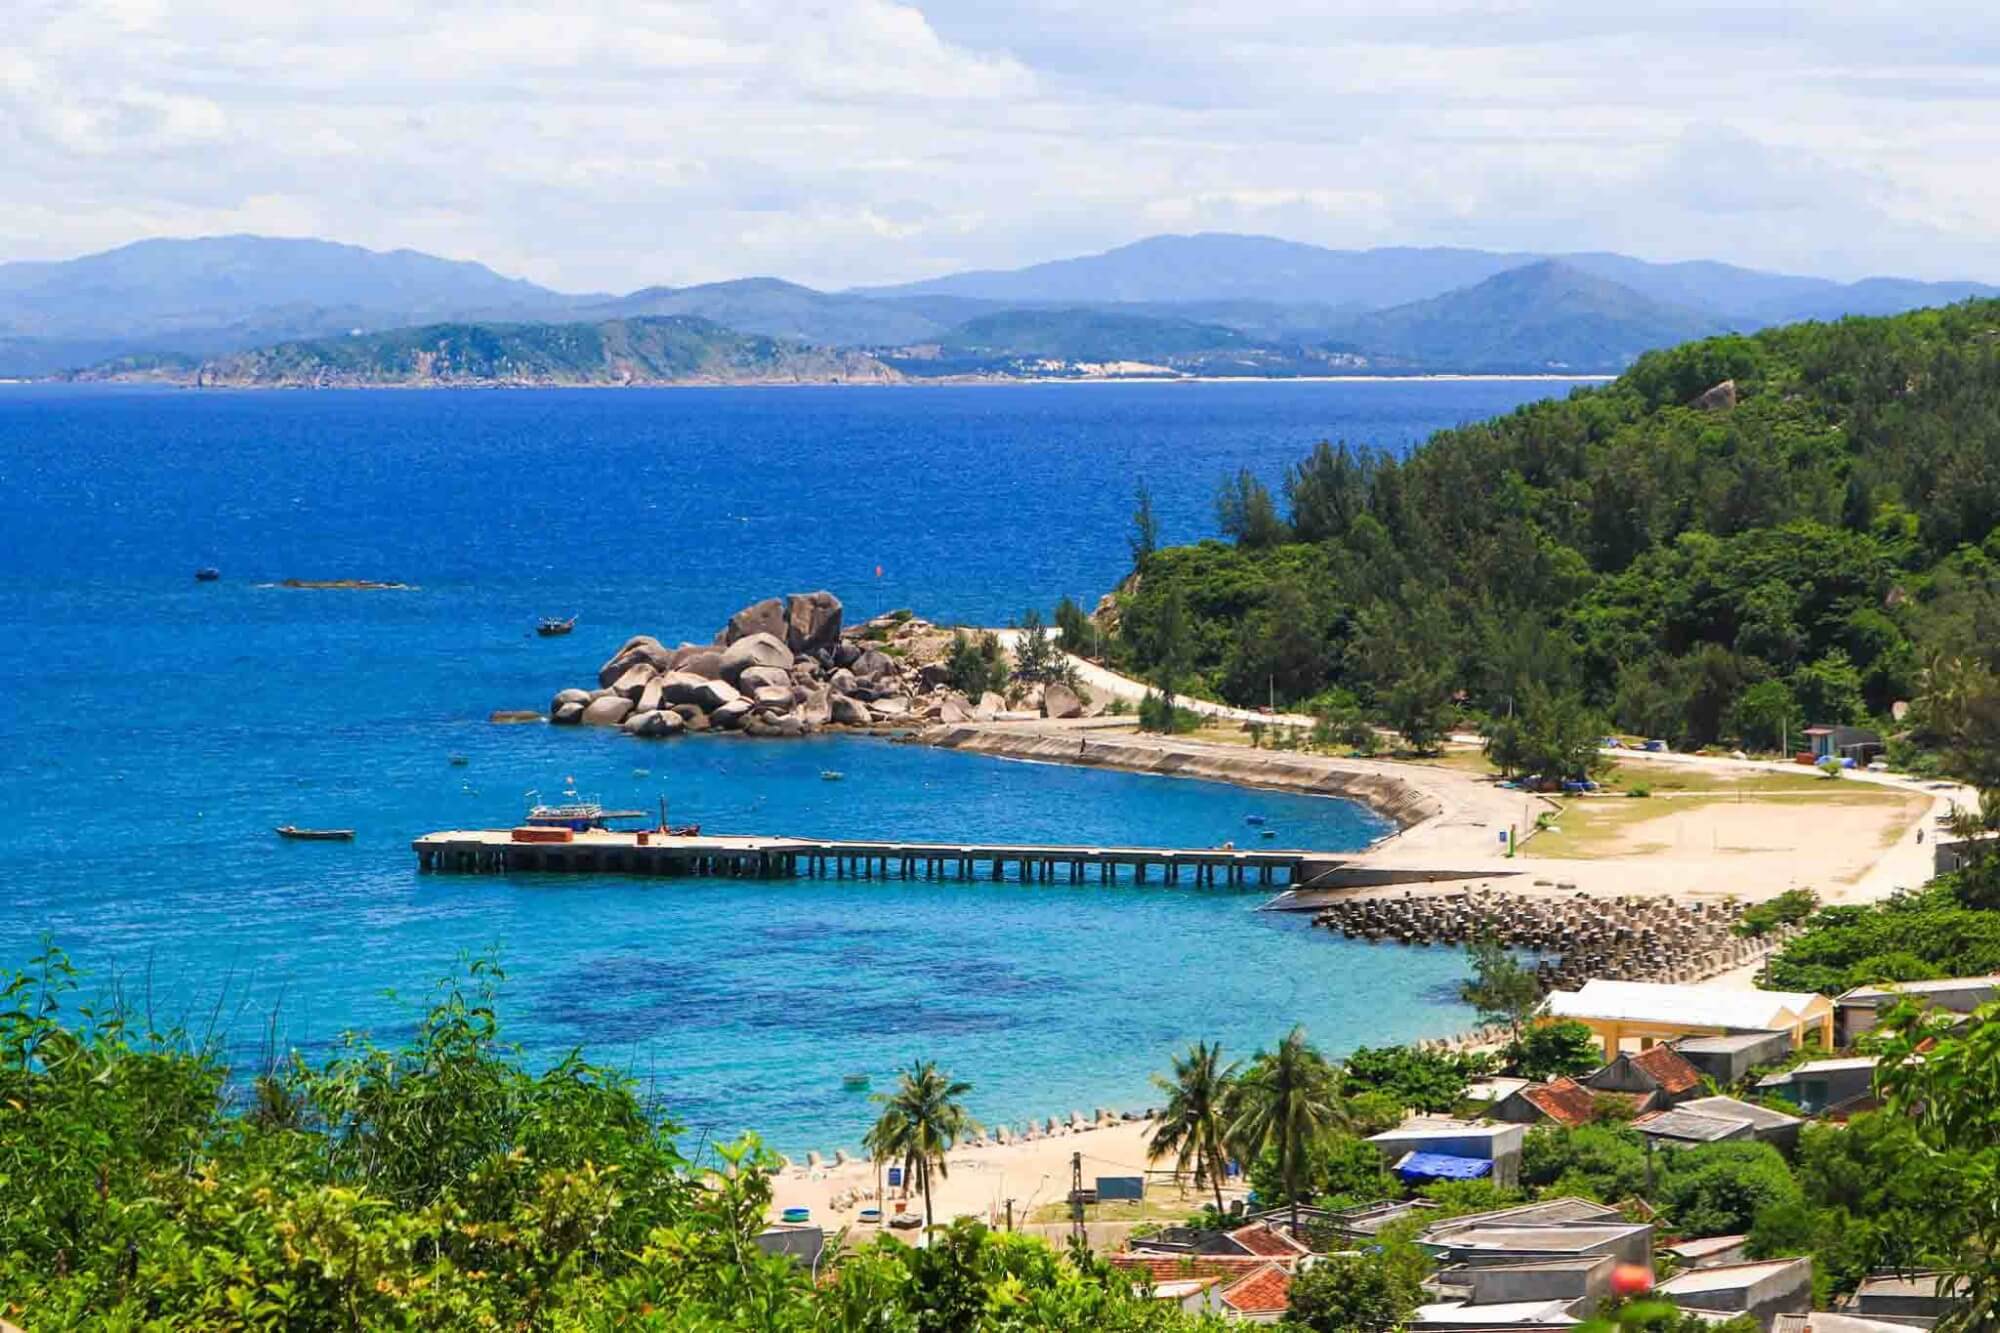 Review Đảo Cù Lao Xanh: Đường đi, giá vé, trải nghiệm 